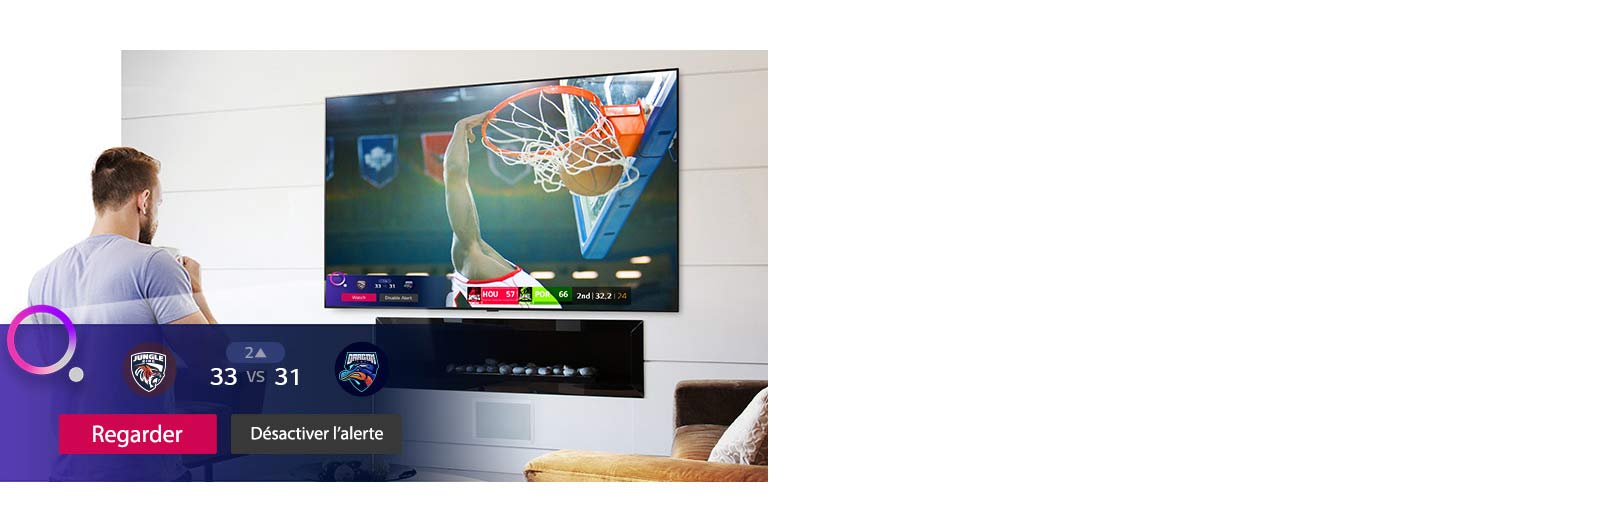 L'écran montre une scène d'un match de basket avec Sports Alert